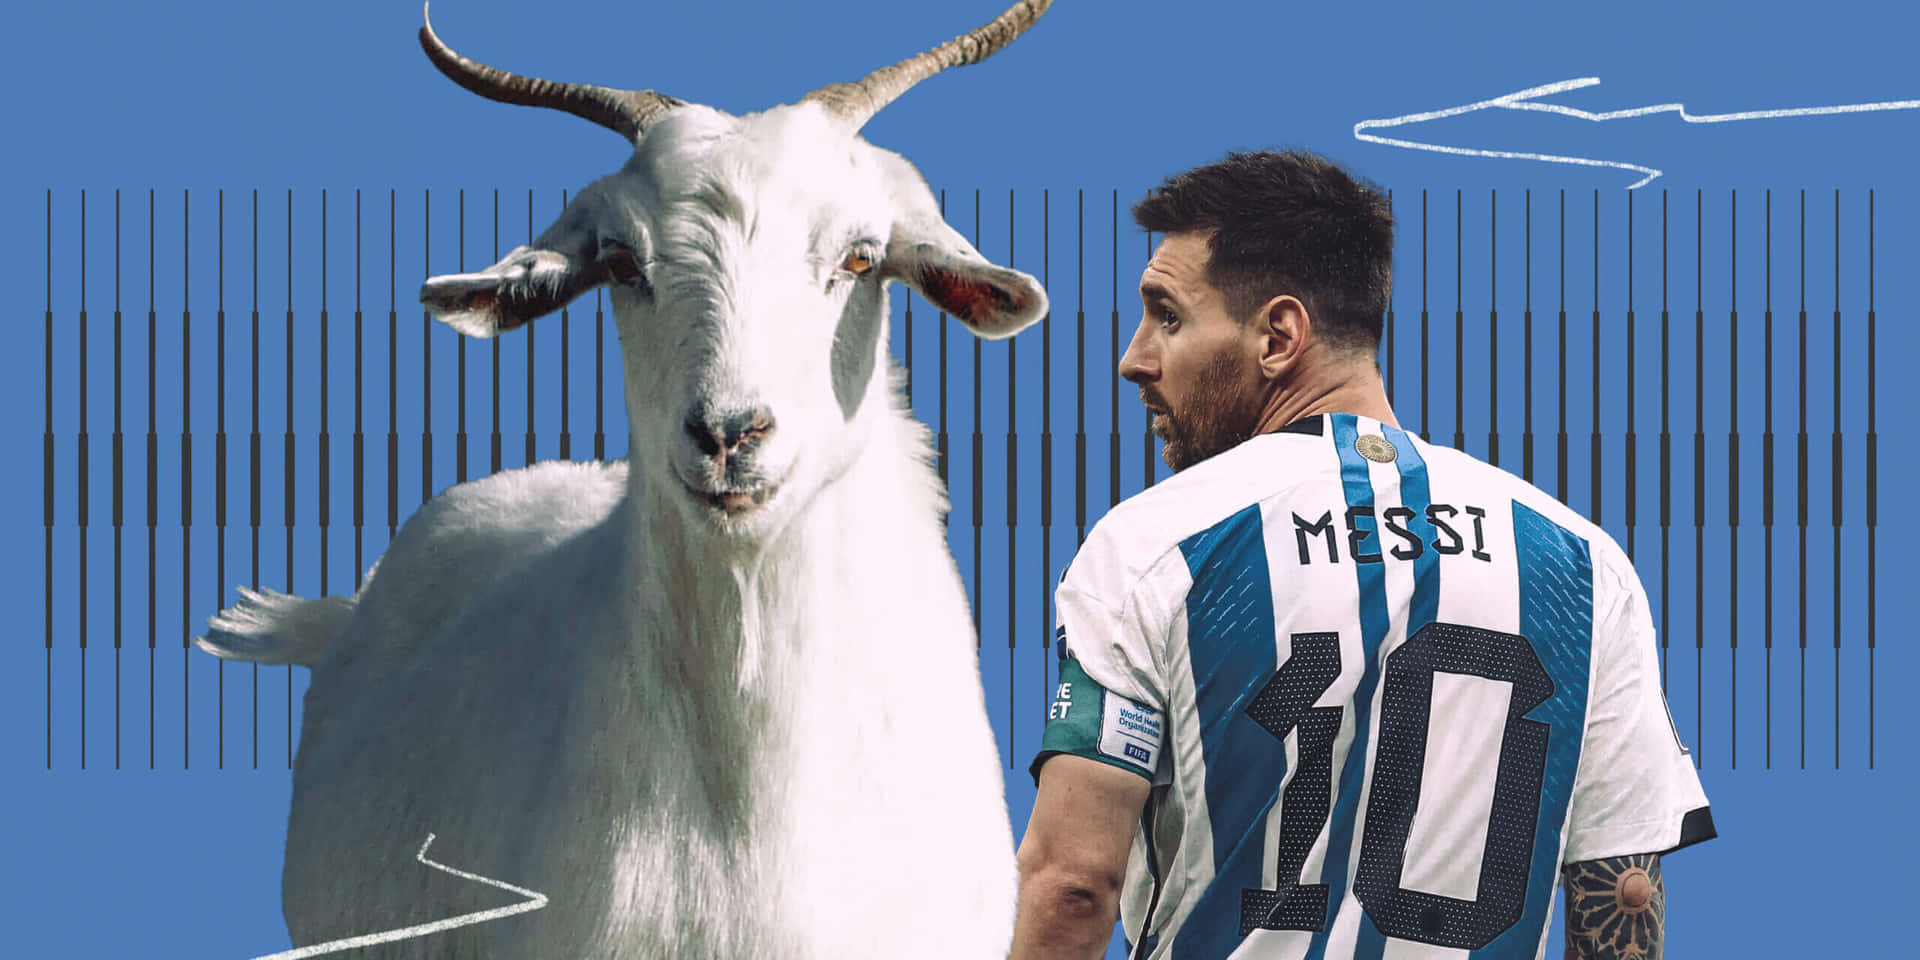 Messiand Goat Comparison Wallpaper